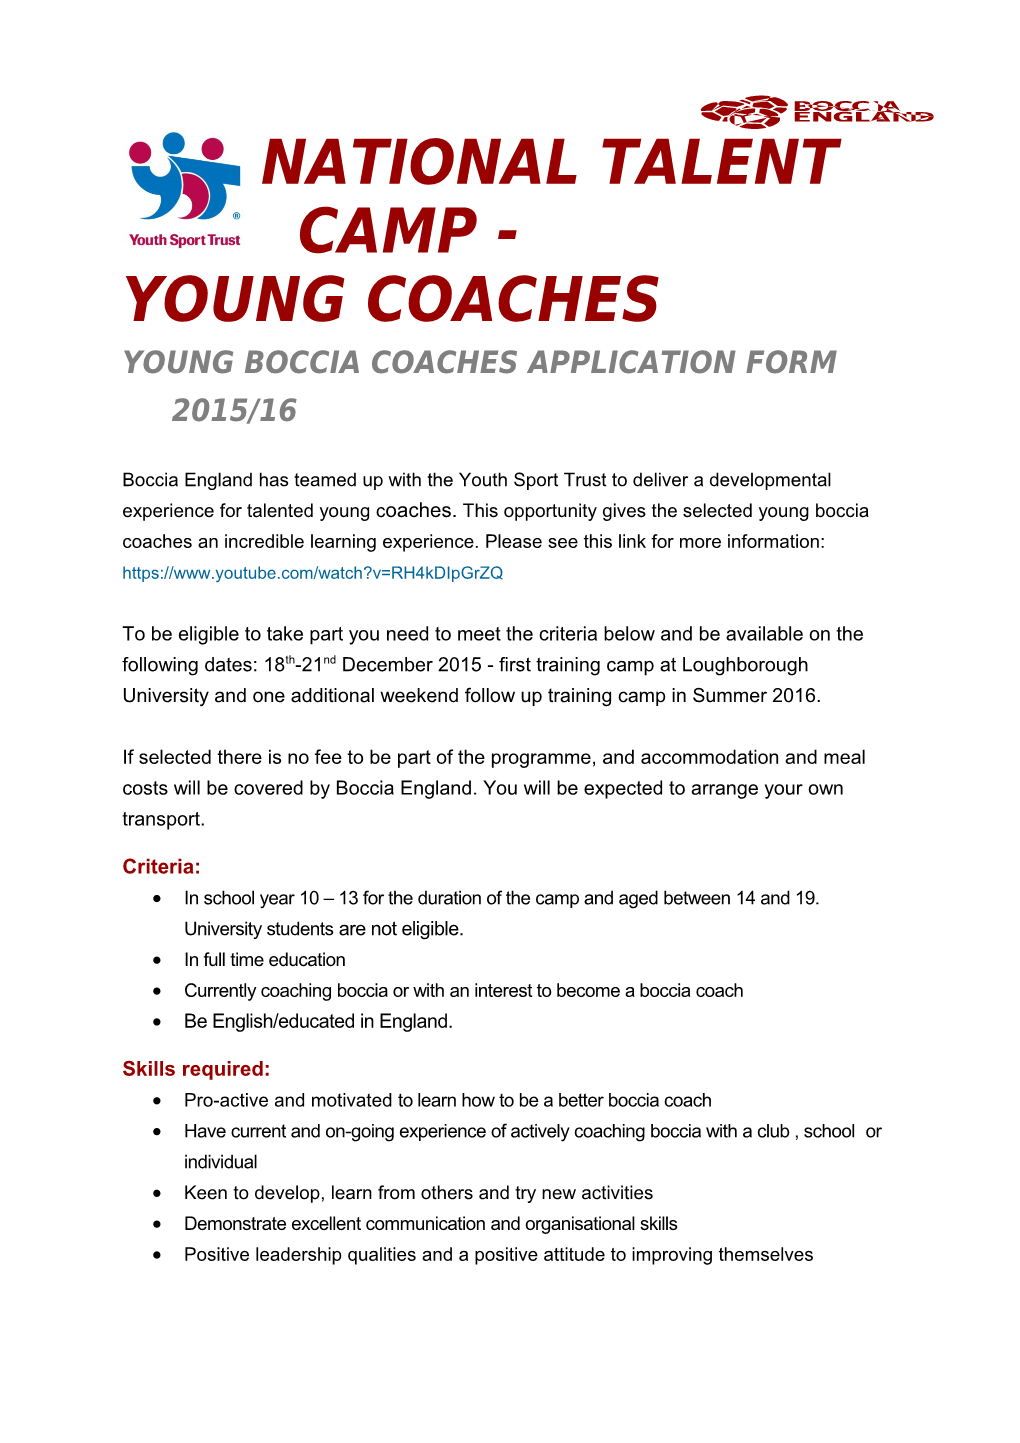 Young Boccia Coaches Application Form 2015/16